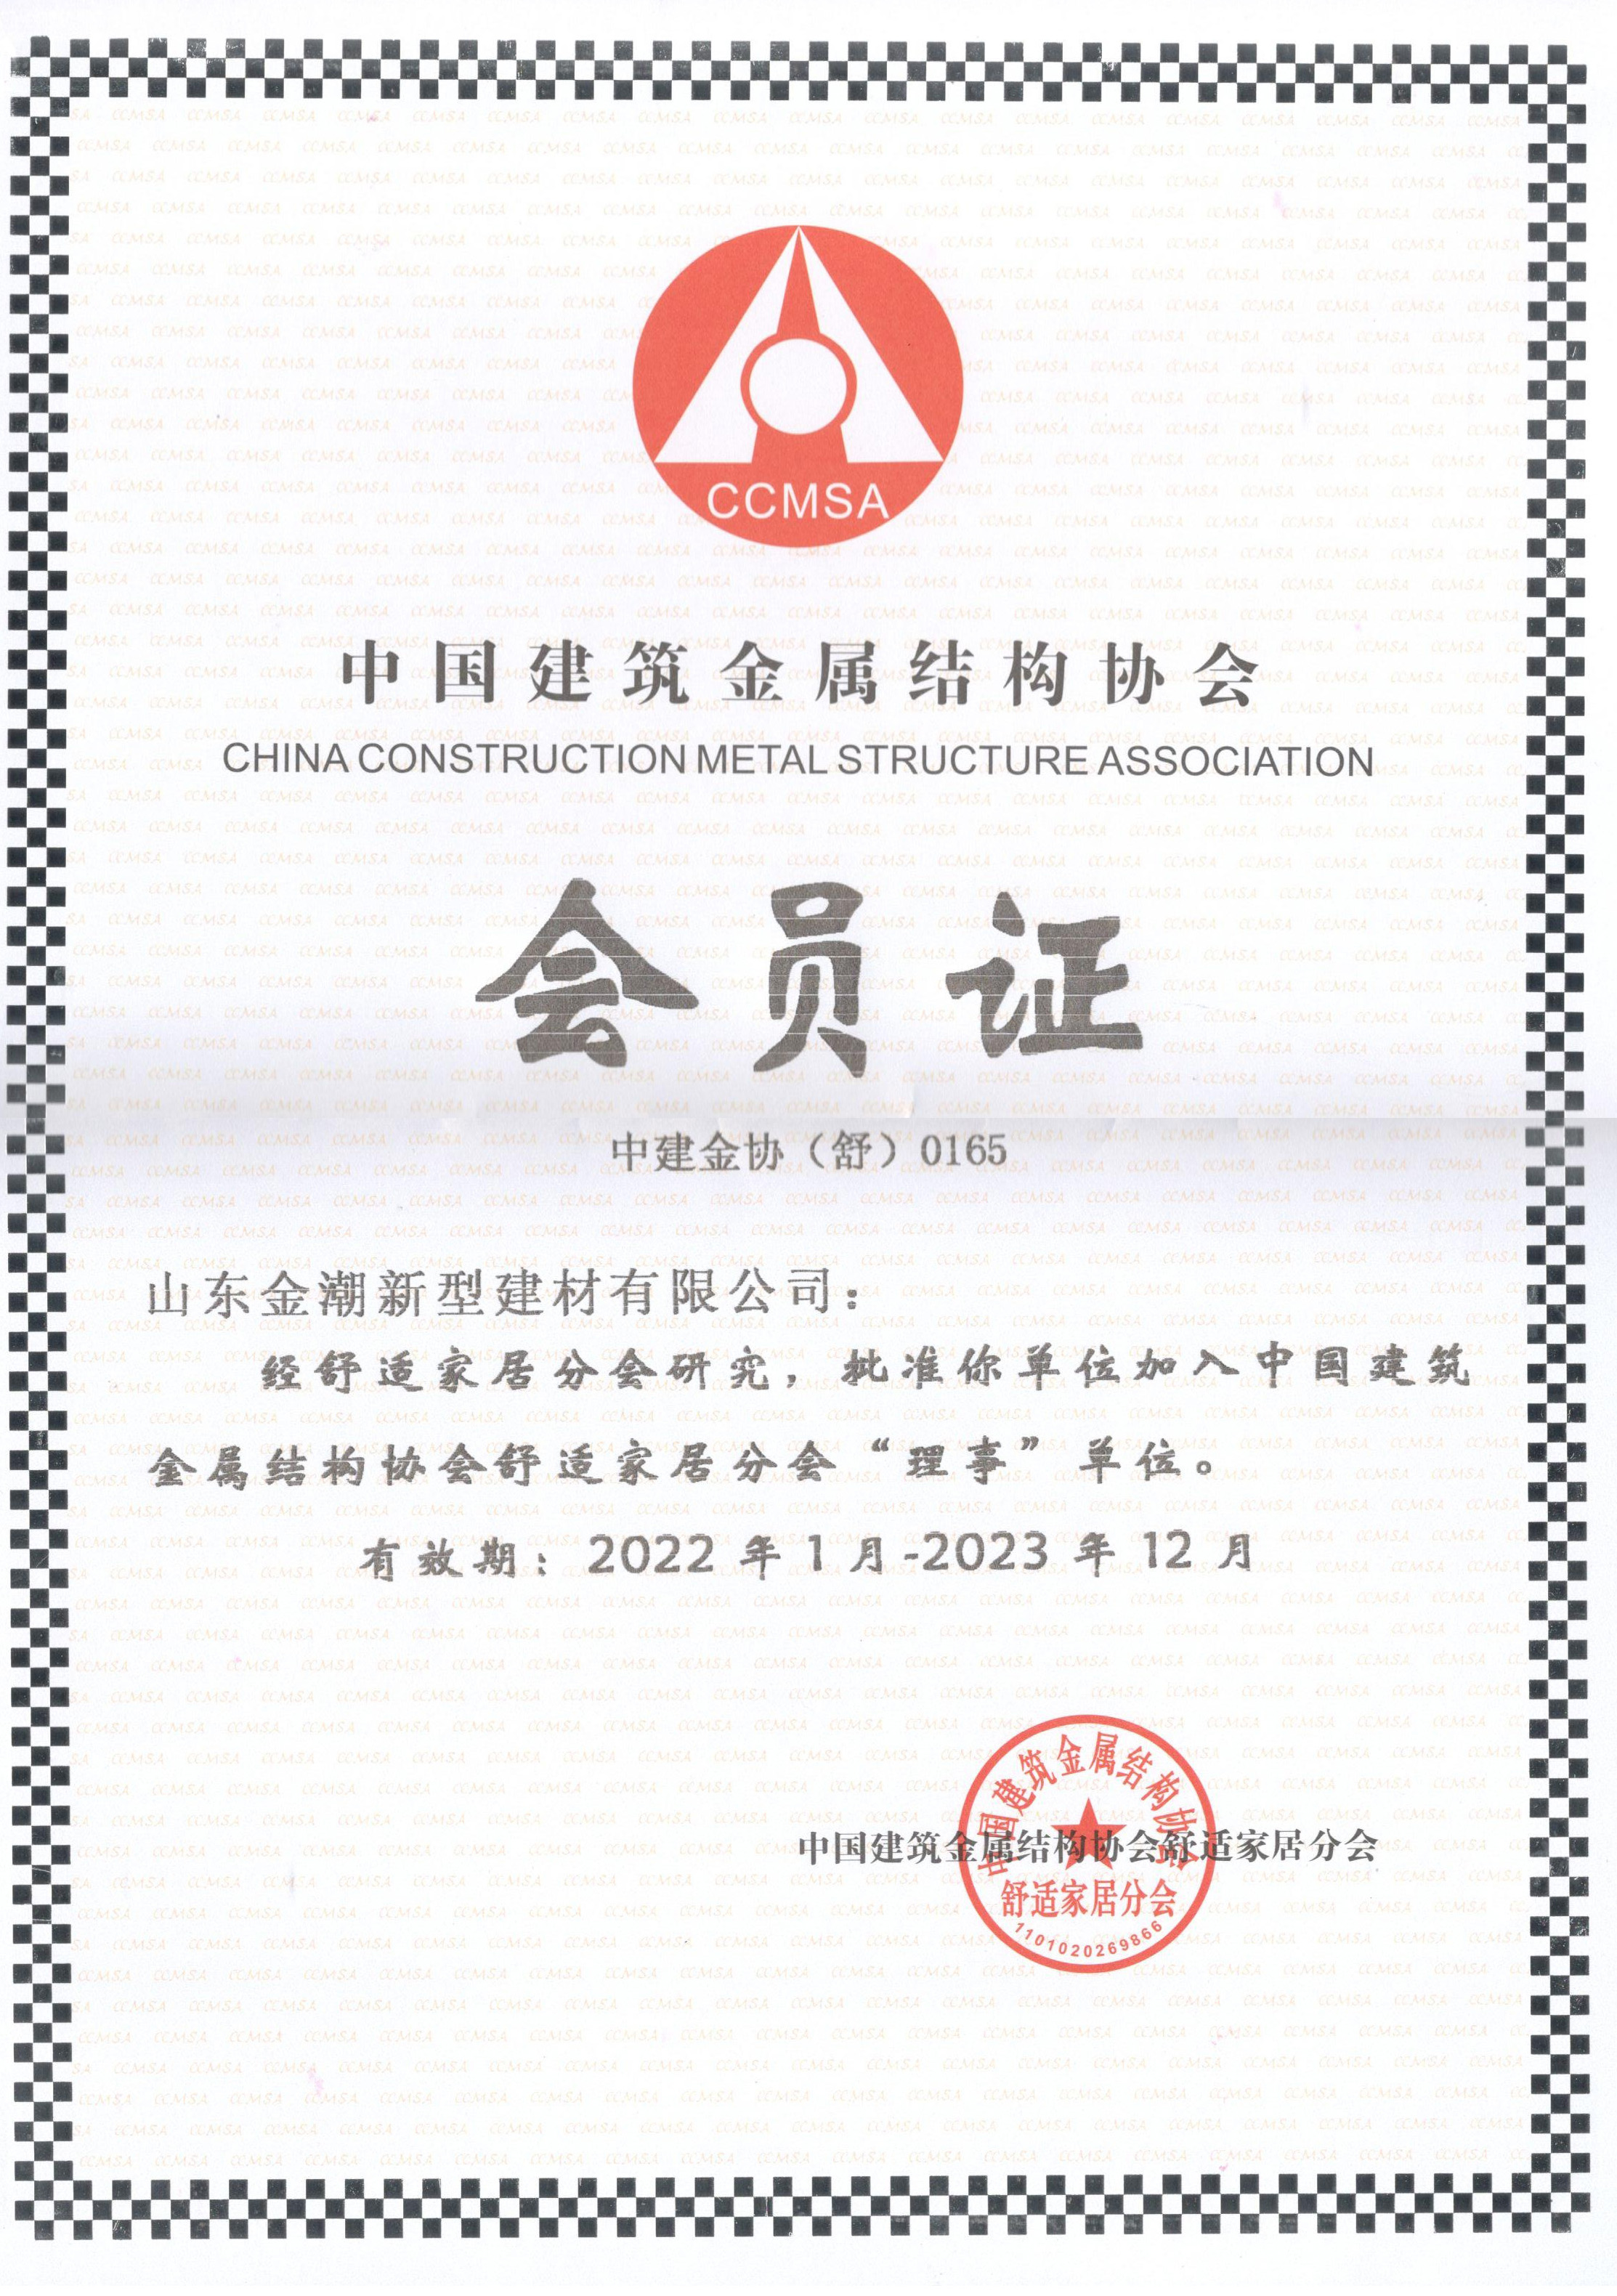 2022年获得“中国建筑金属结构协会会员认证”